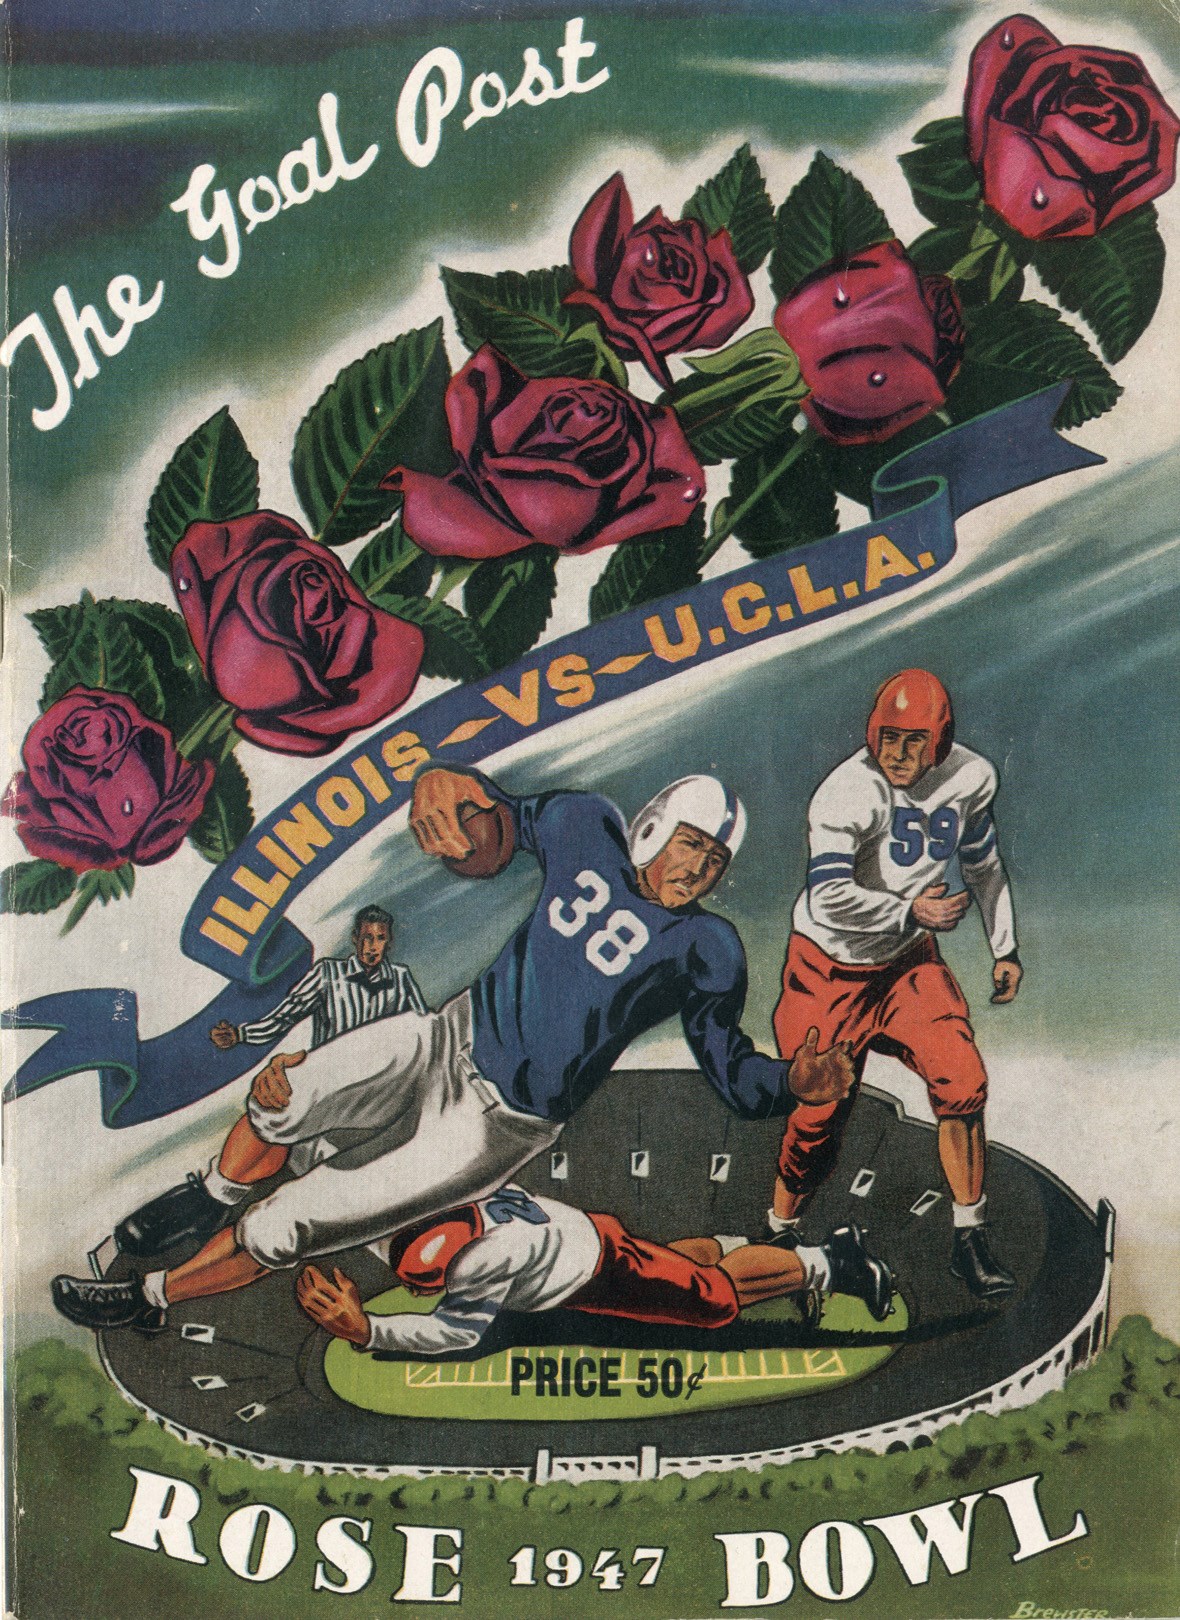 1947 Rose Bowl Program